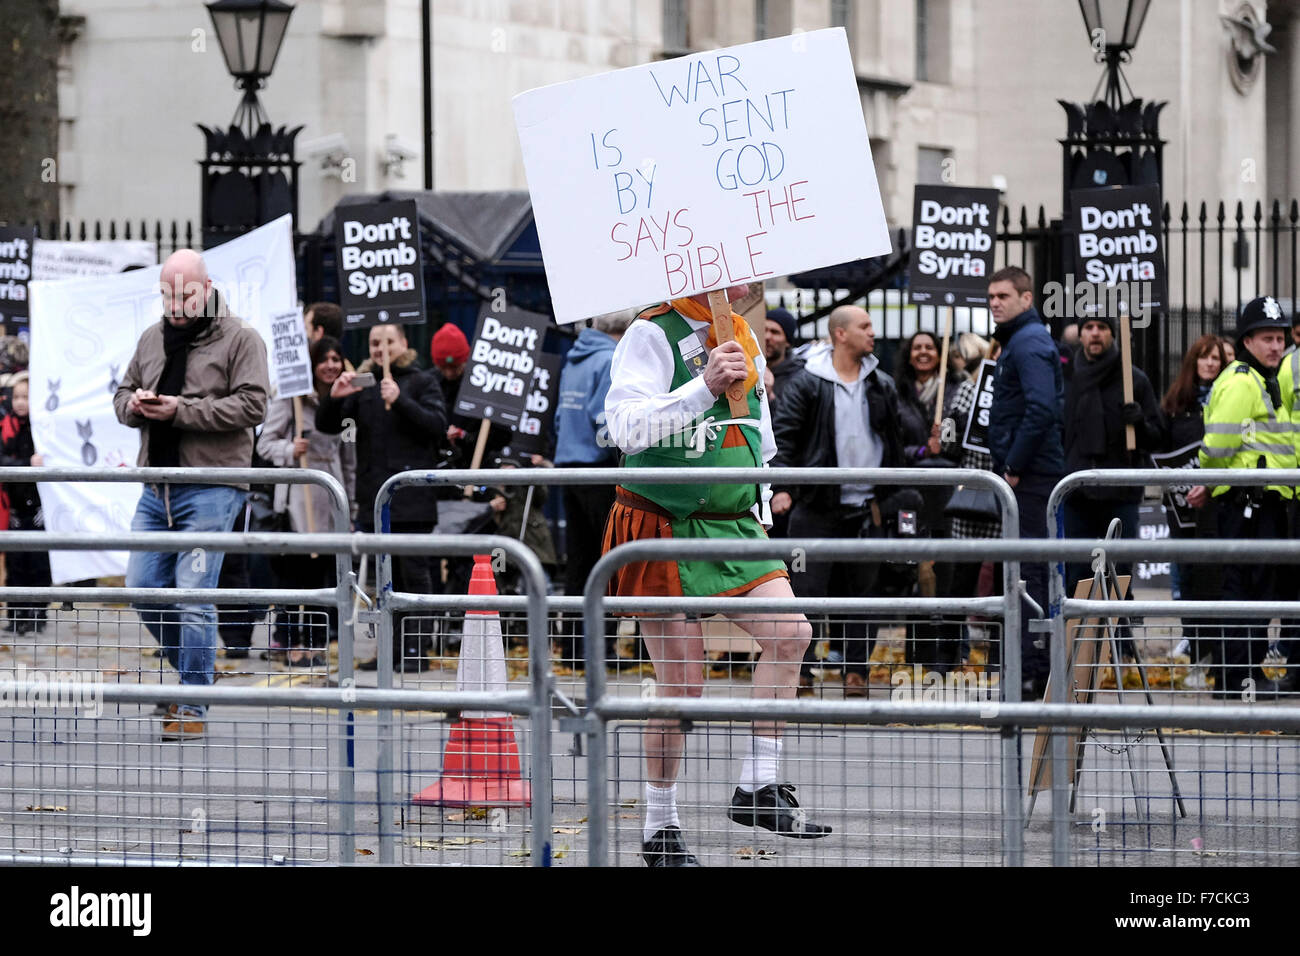 Neil Cornelius Horan ein christlicher Fundamentalist tanzt eine Gigue, als Demonstranten in London zu protestieren gegen die Bombardierung von Syrien zu sammeln. Stockfoto